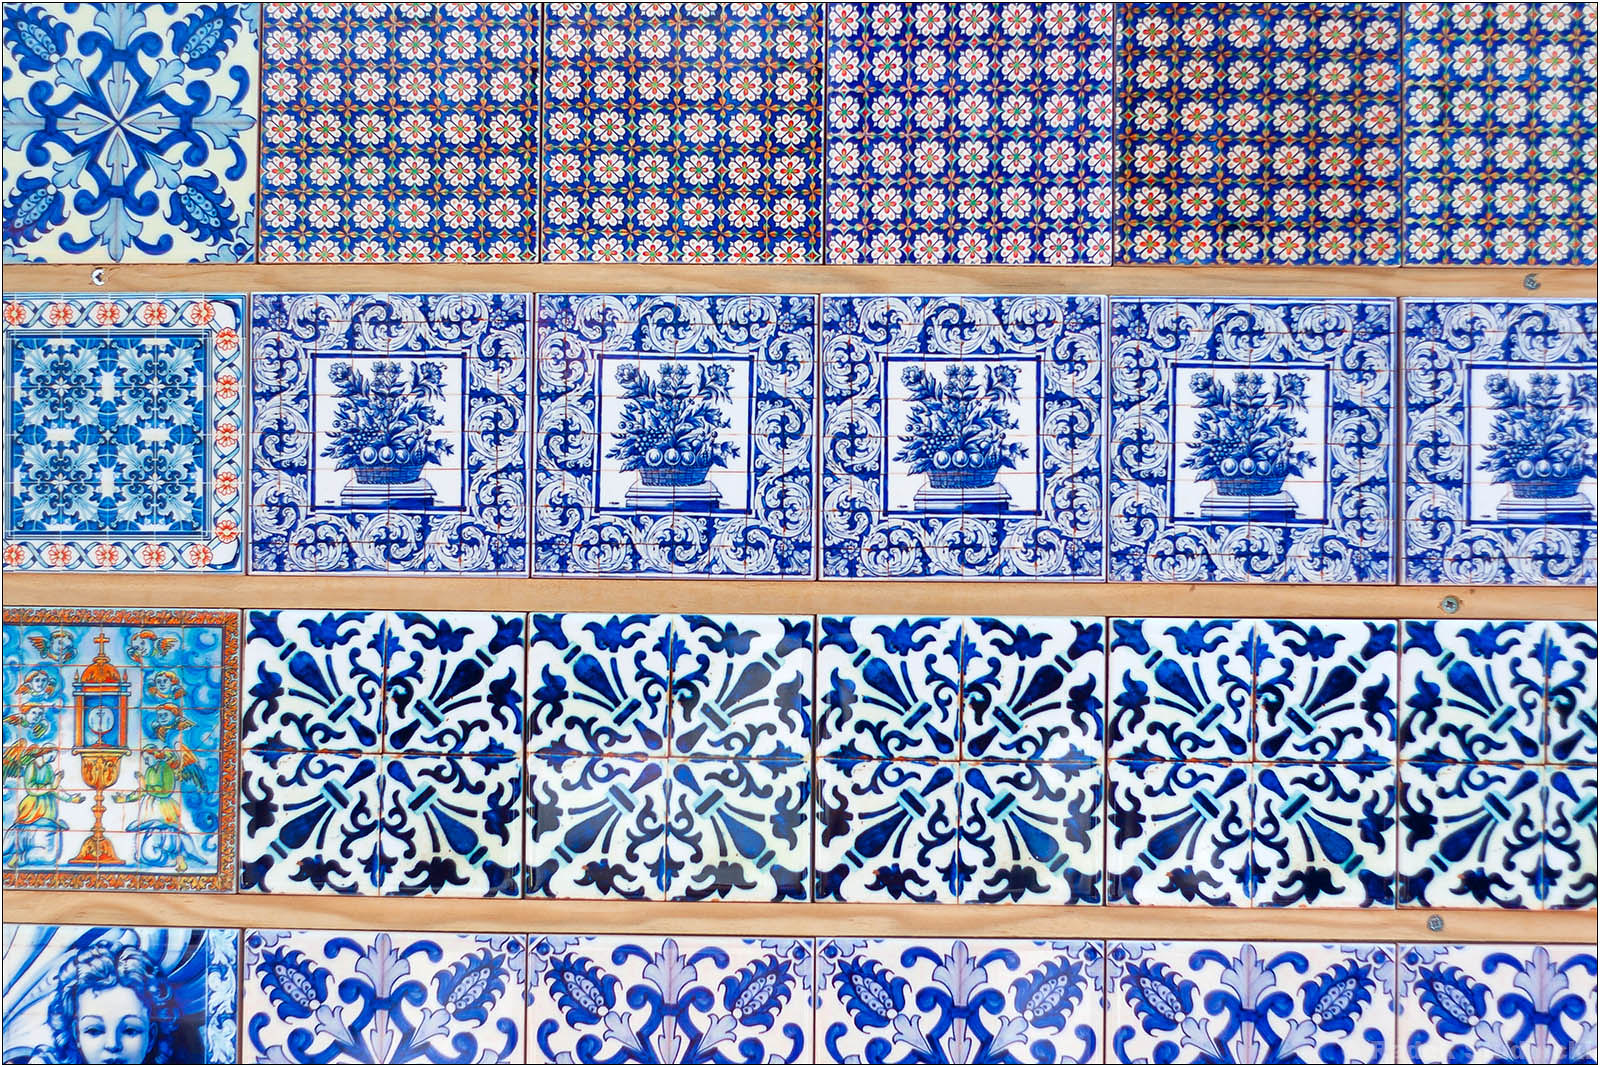 Lizbońskie azulejos